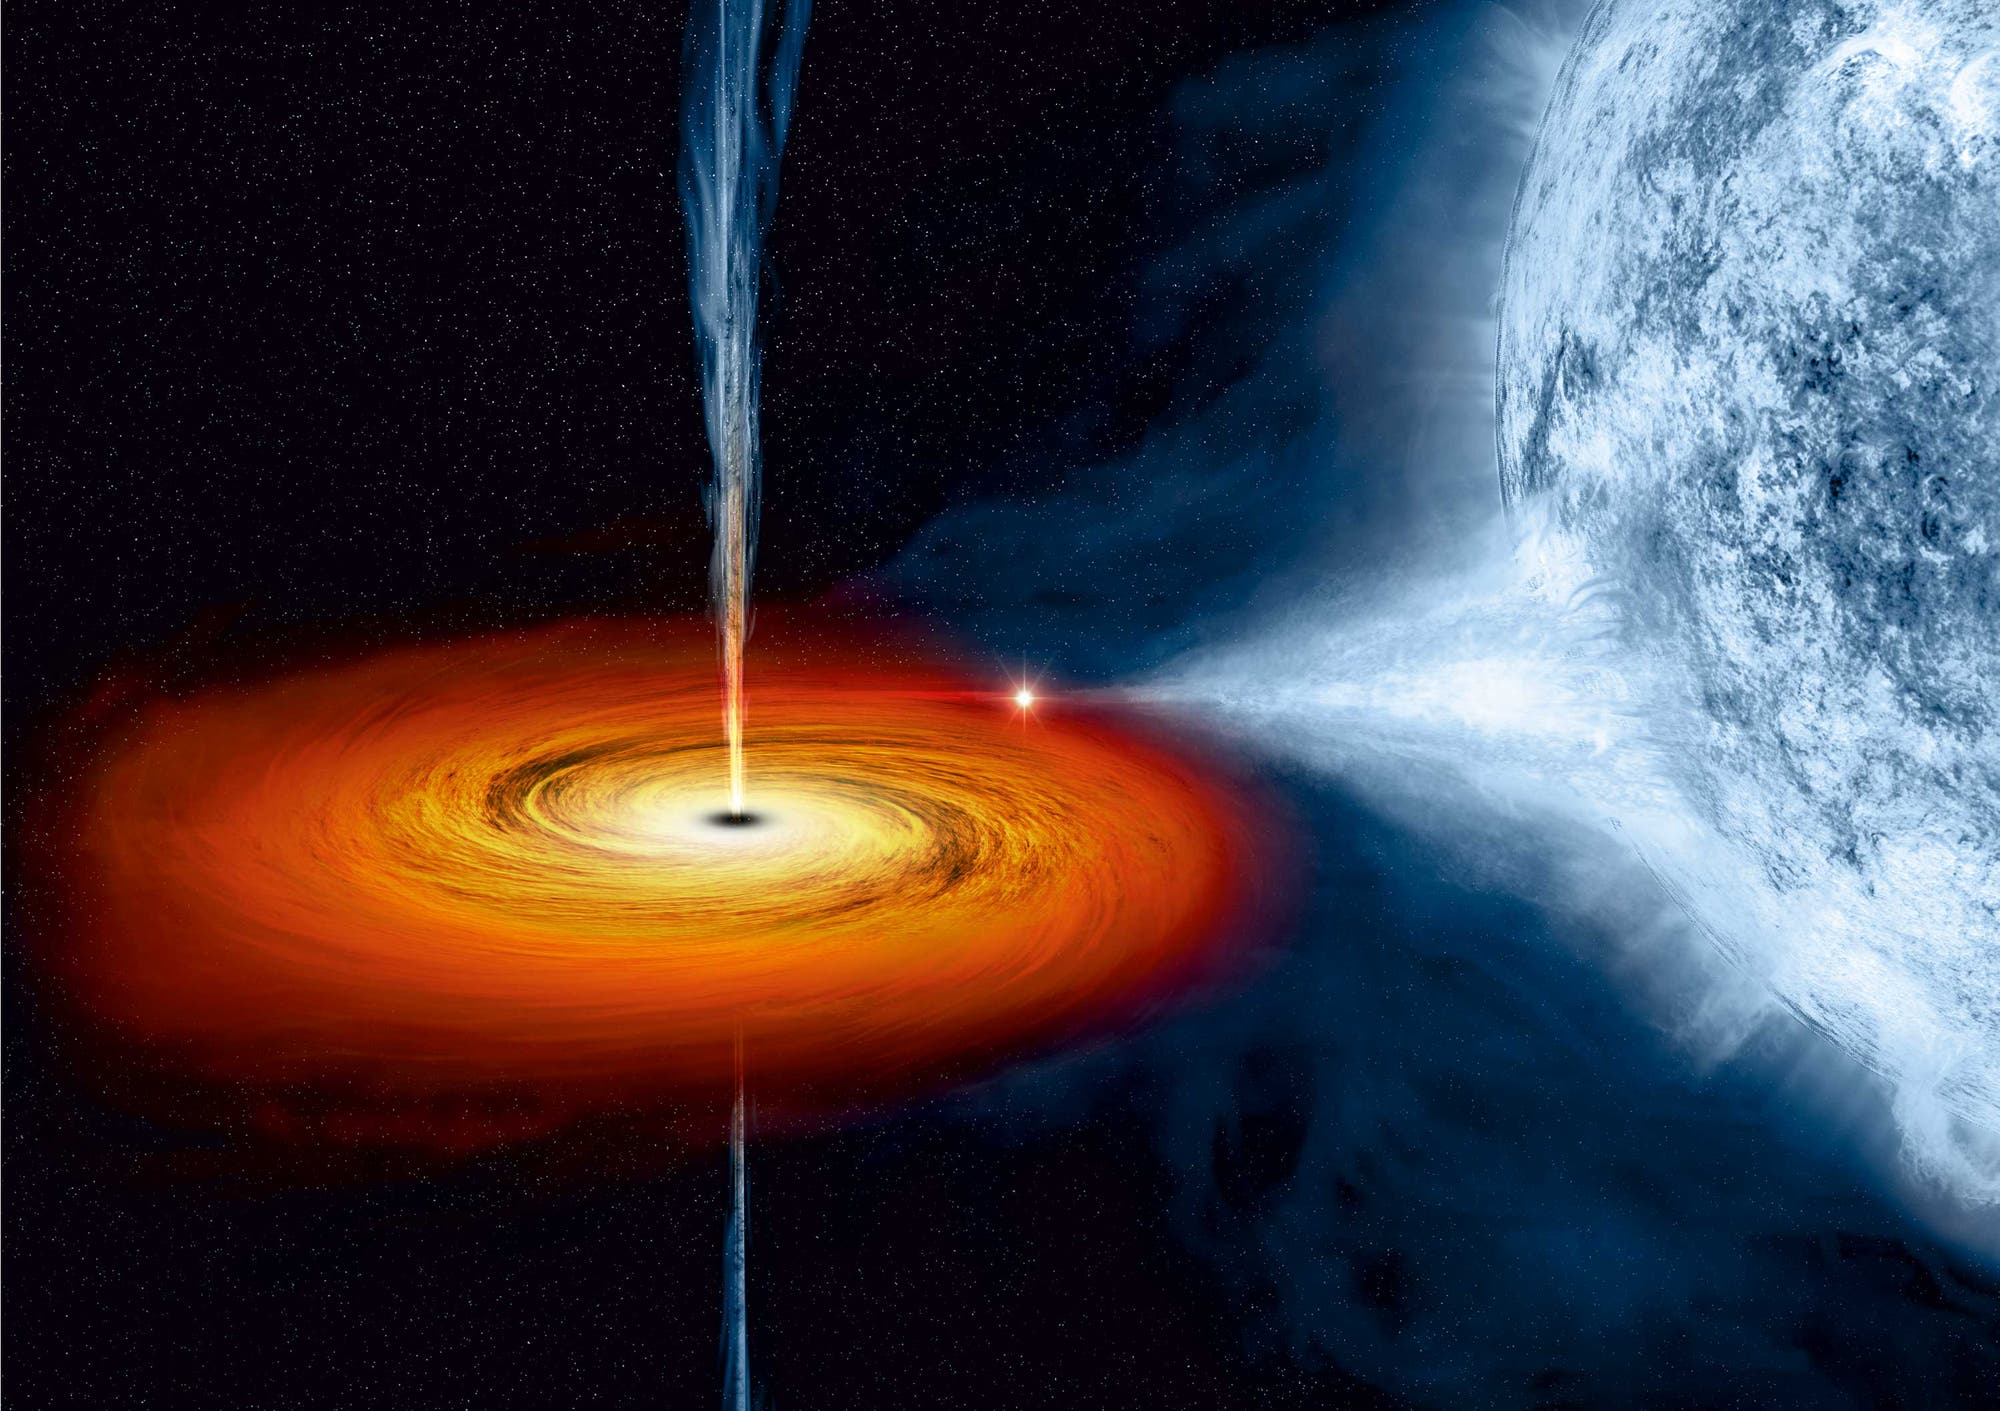 Cygnus X-1 – Schwarzes Loch mit Akkretionsscheibe